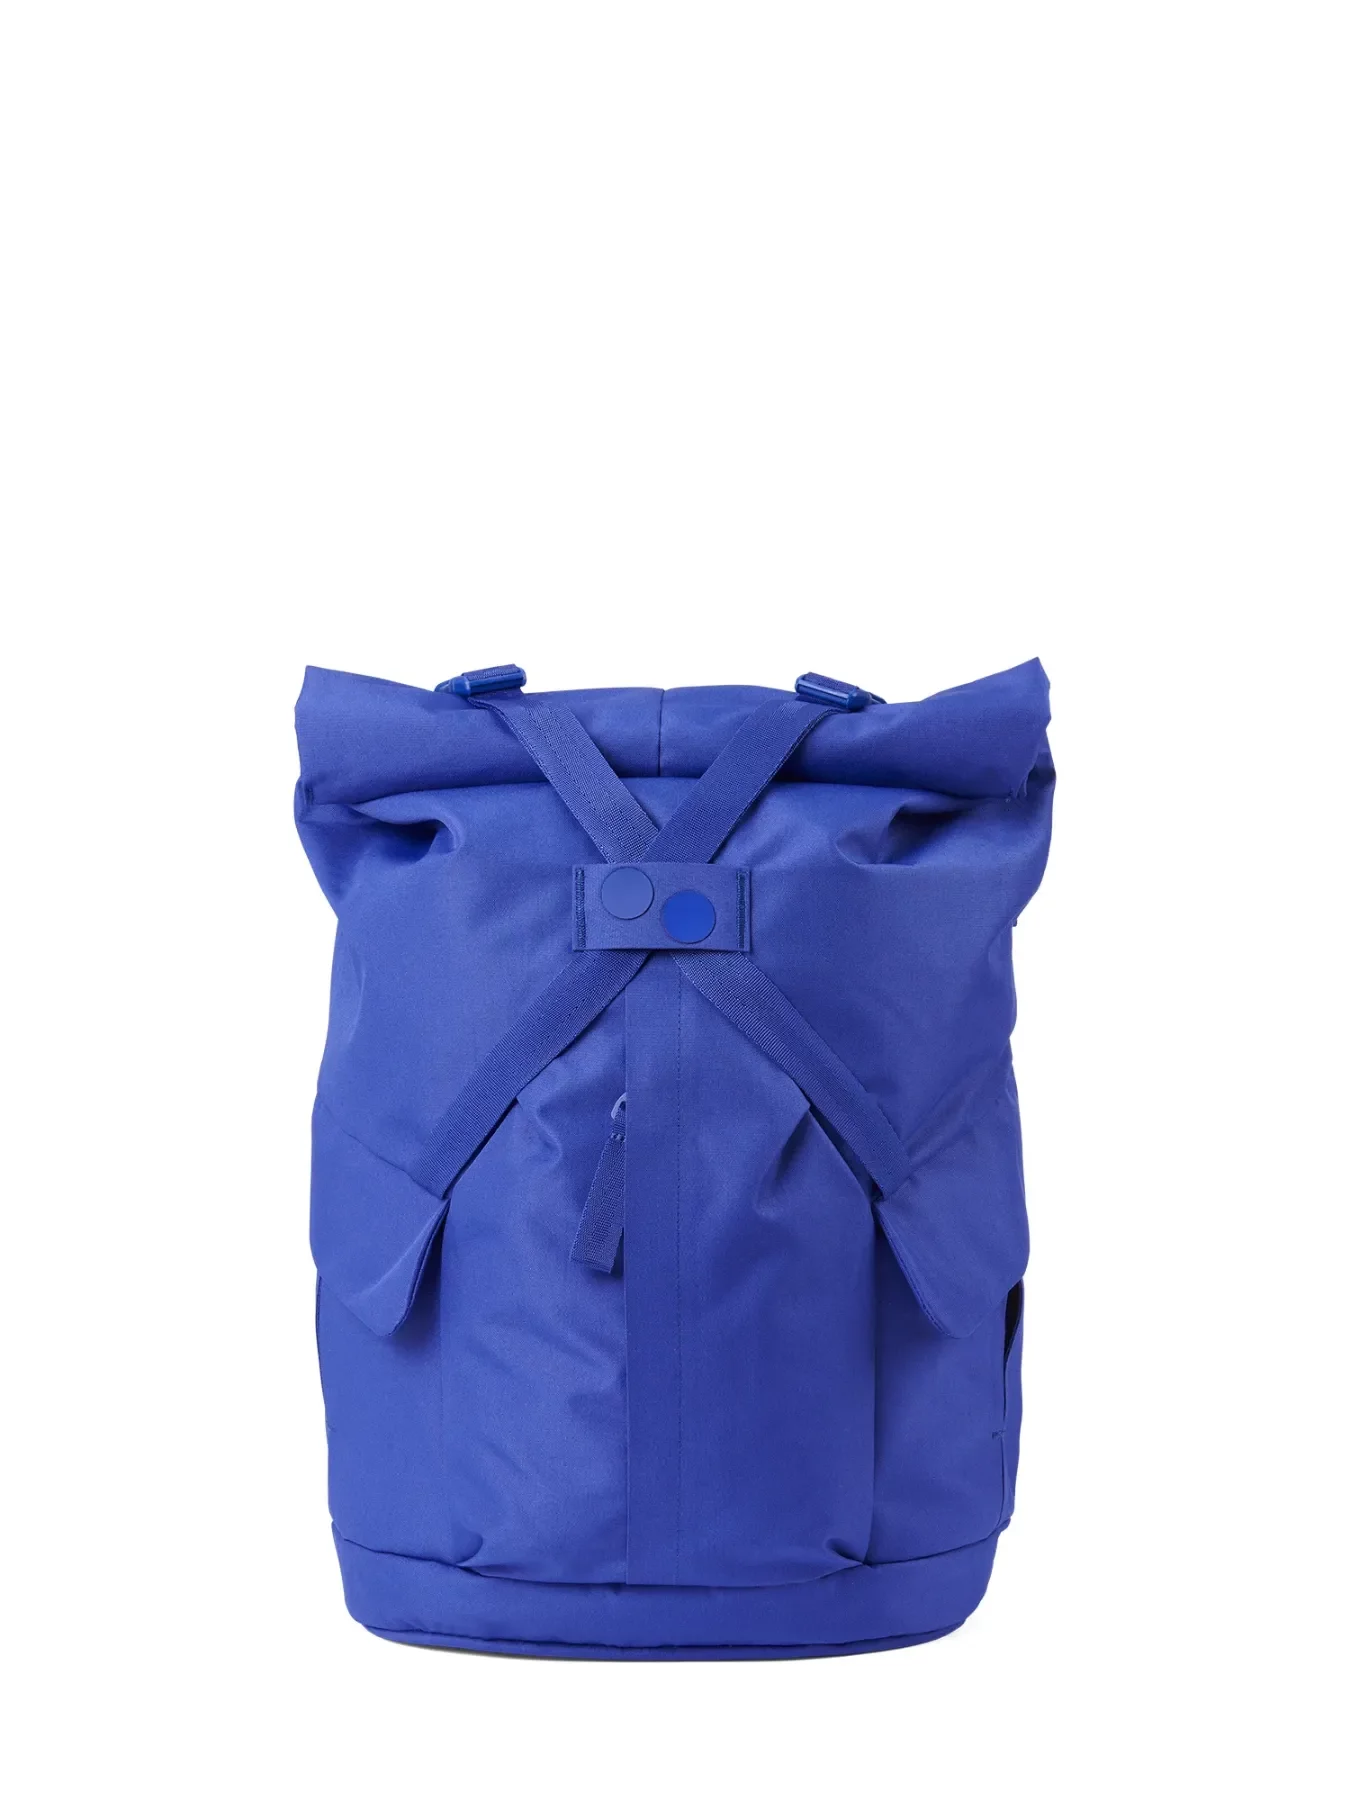 pinqponq Backpack KROSS - Poppy Blue